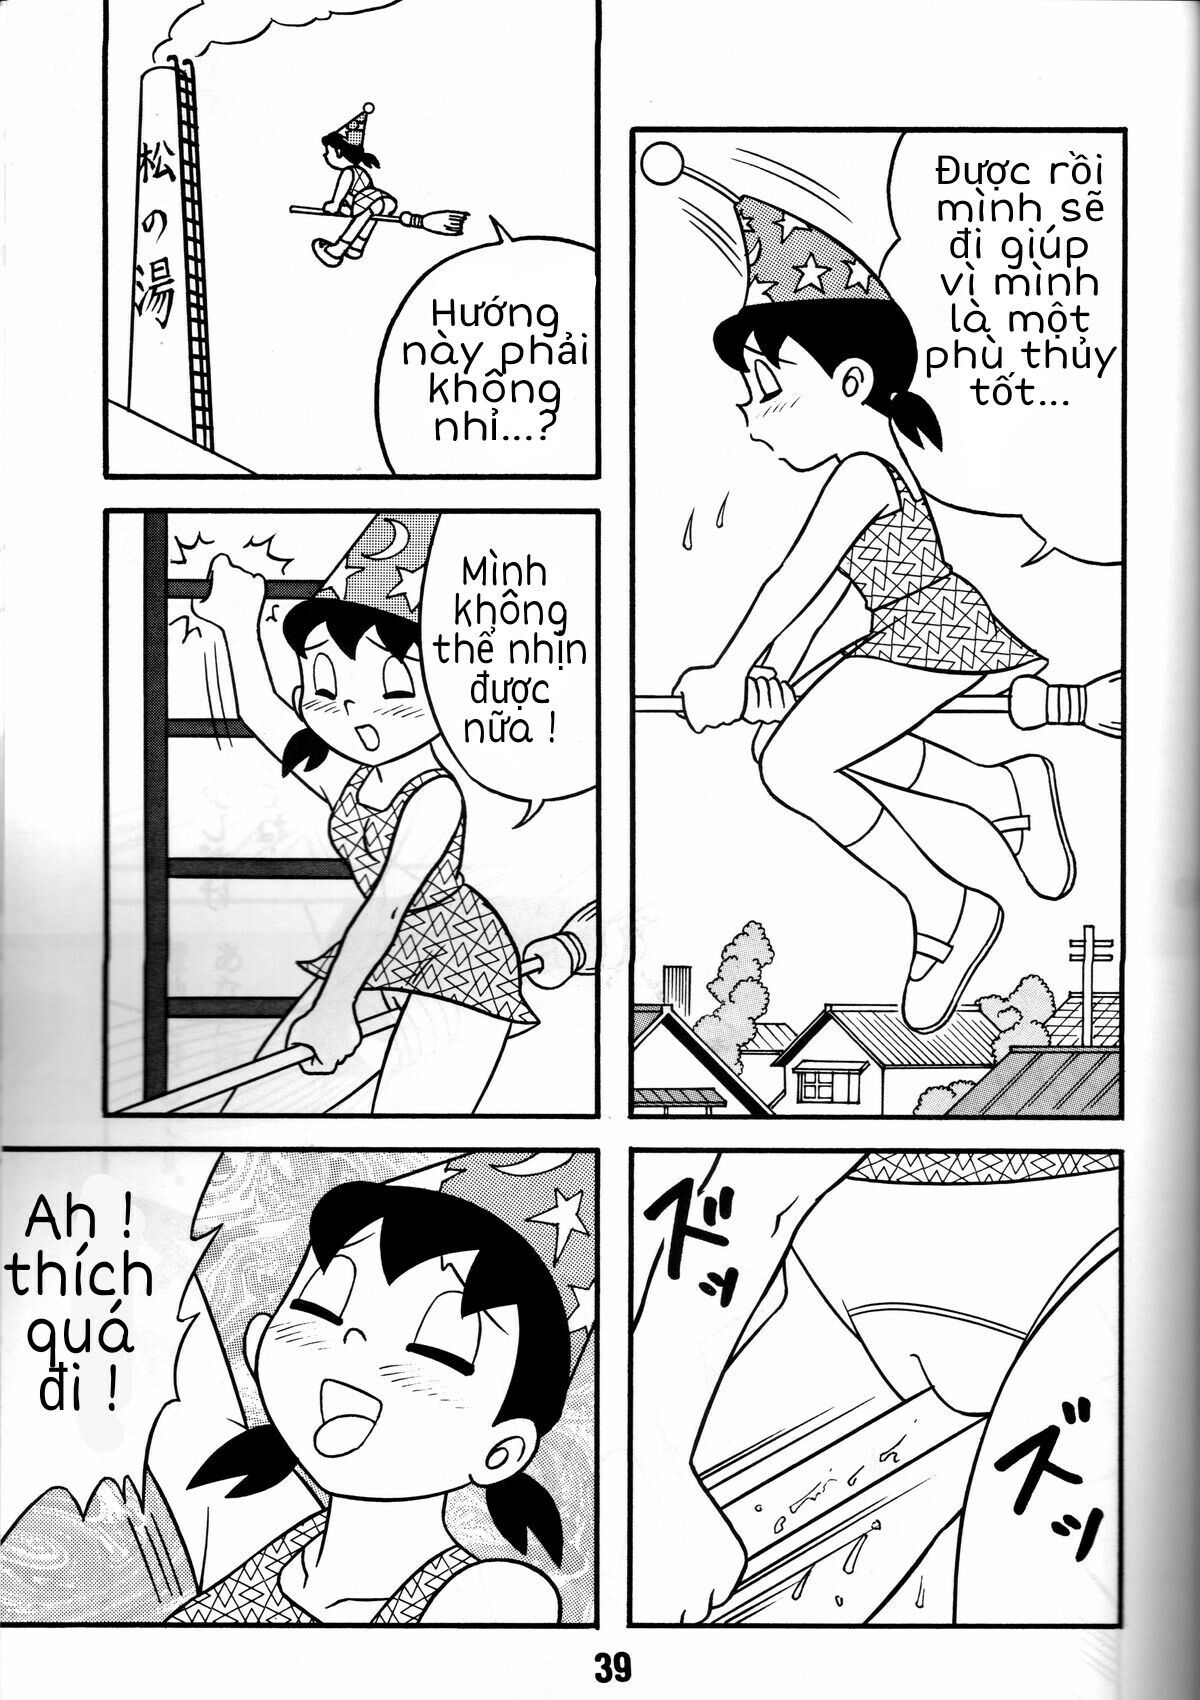 Tuyển Tập Doraemon Doujinshi 18+  Chapter 4- Xuka cô phù thủy nhỏ - Trang 3